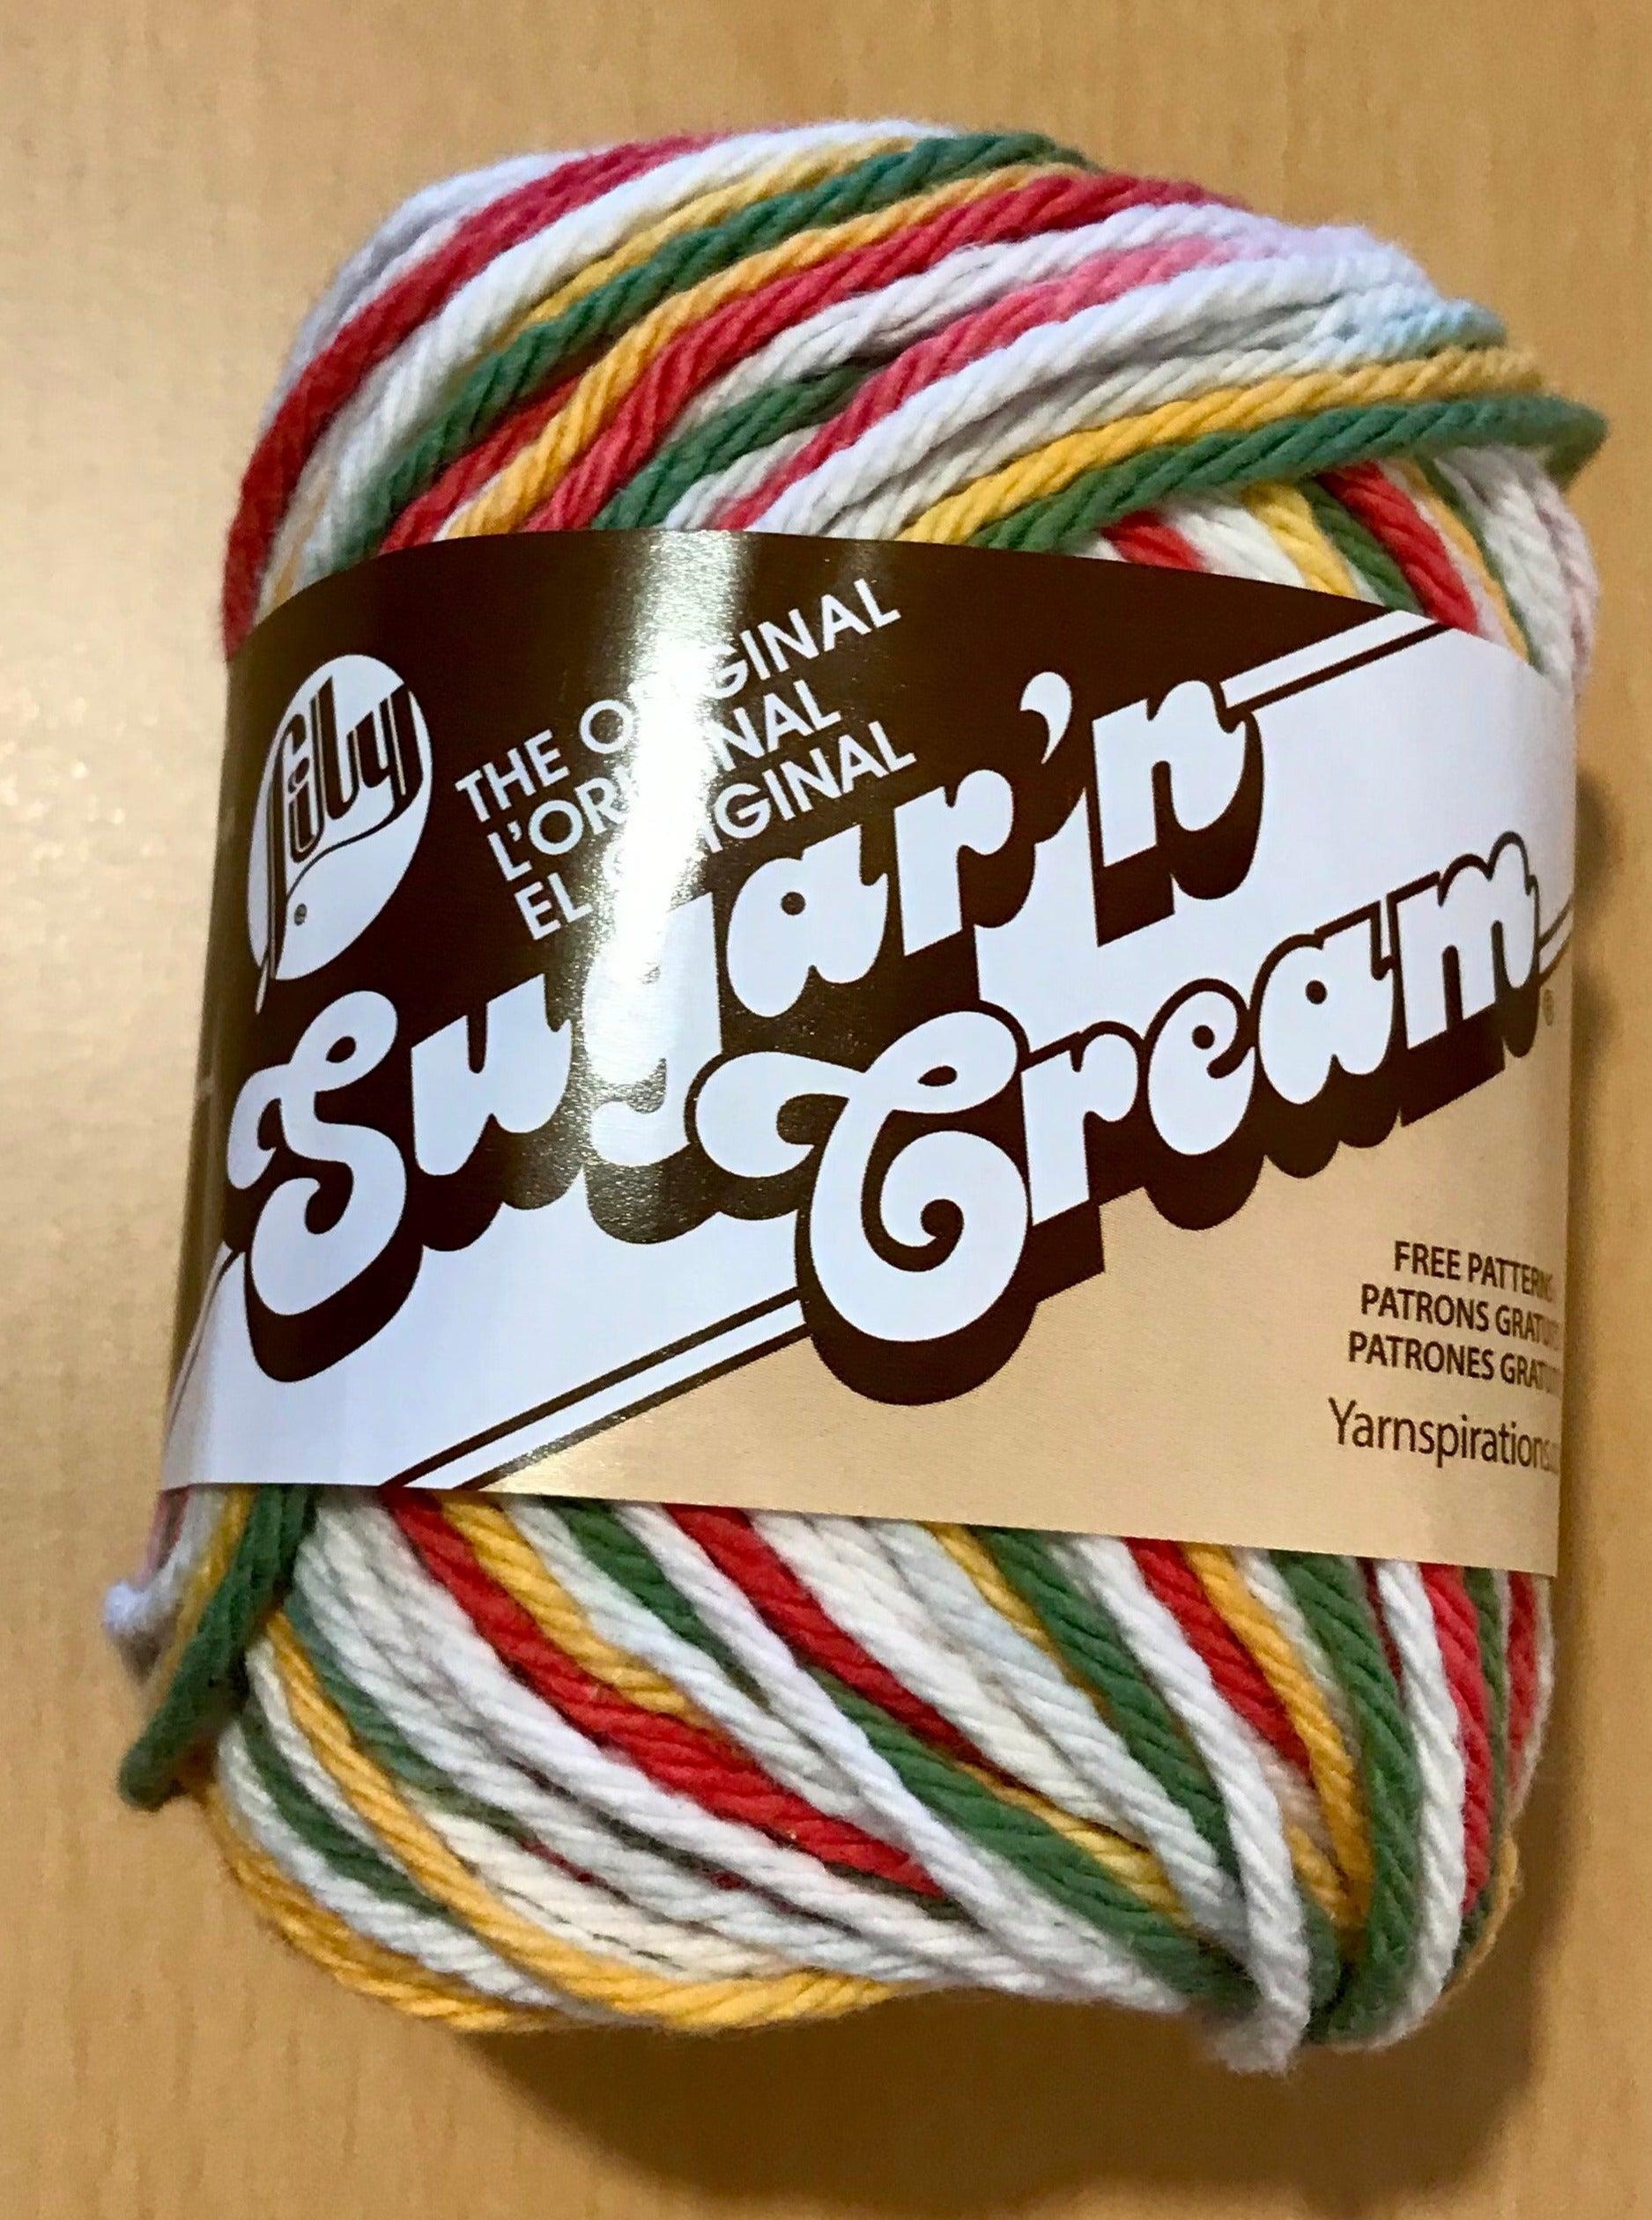 Lily Sugar'n Cream Solids Jute Yarn